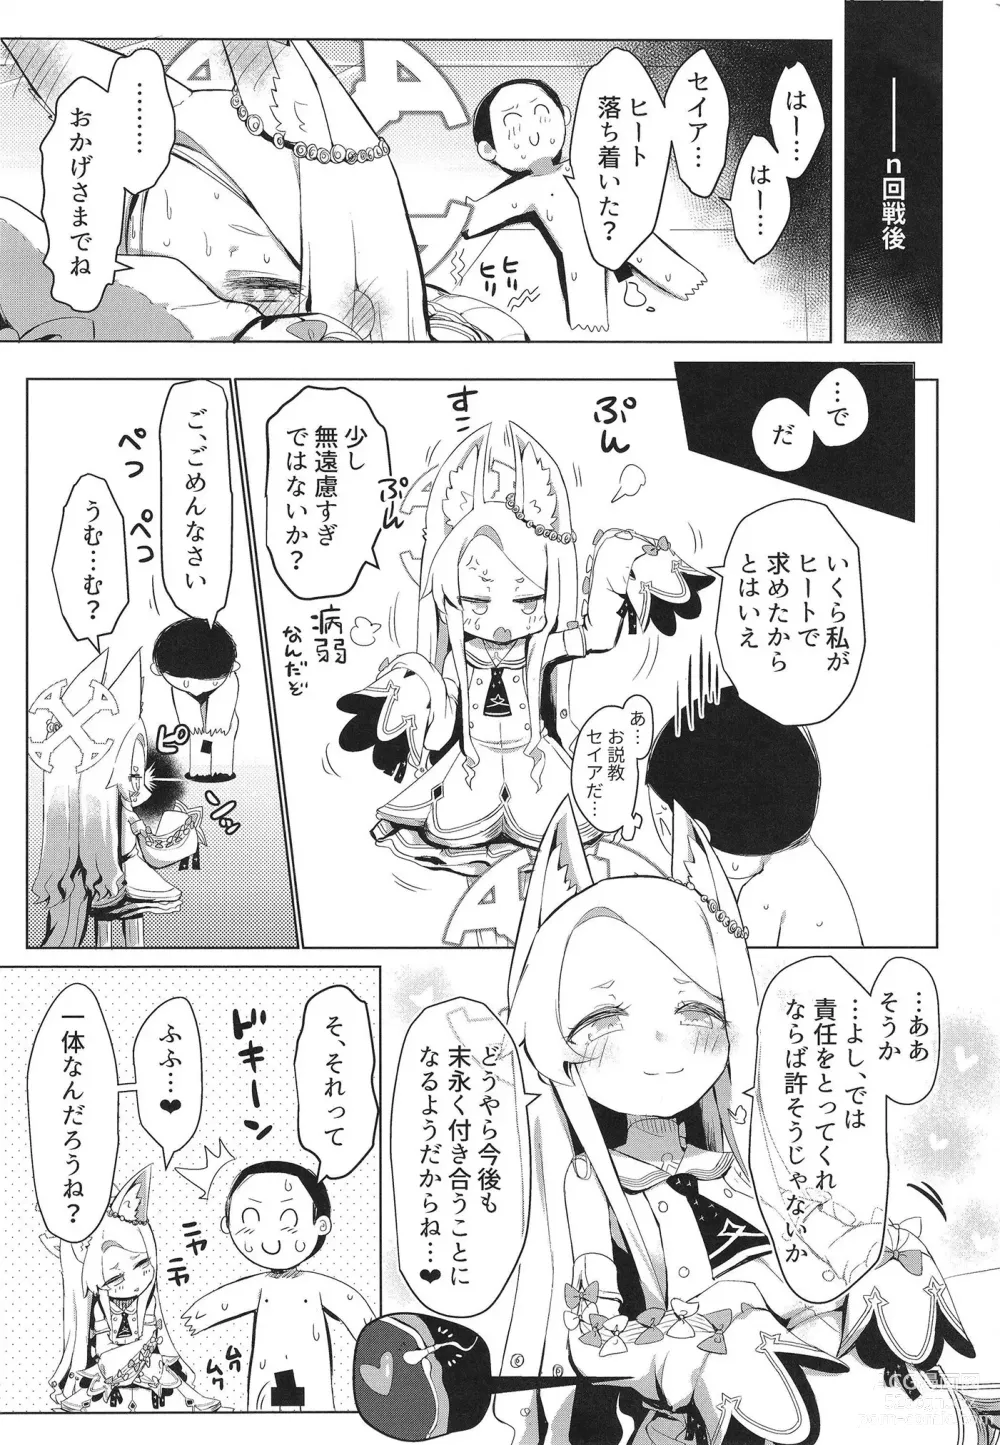 Page 25 of doujinshi Hatsujou Seia de sumanai